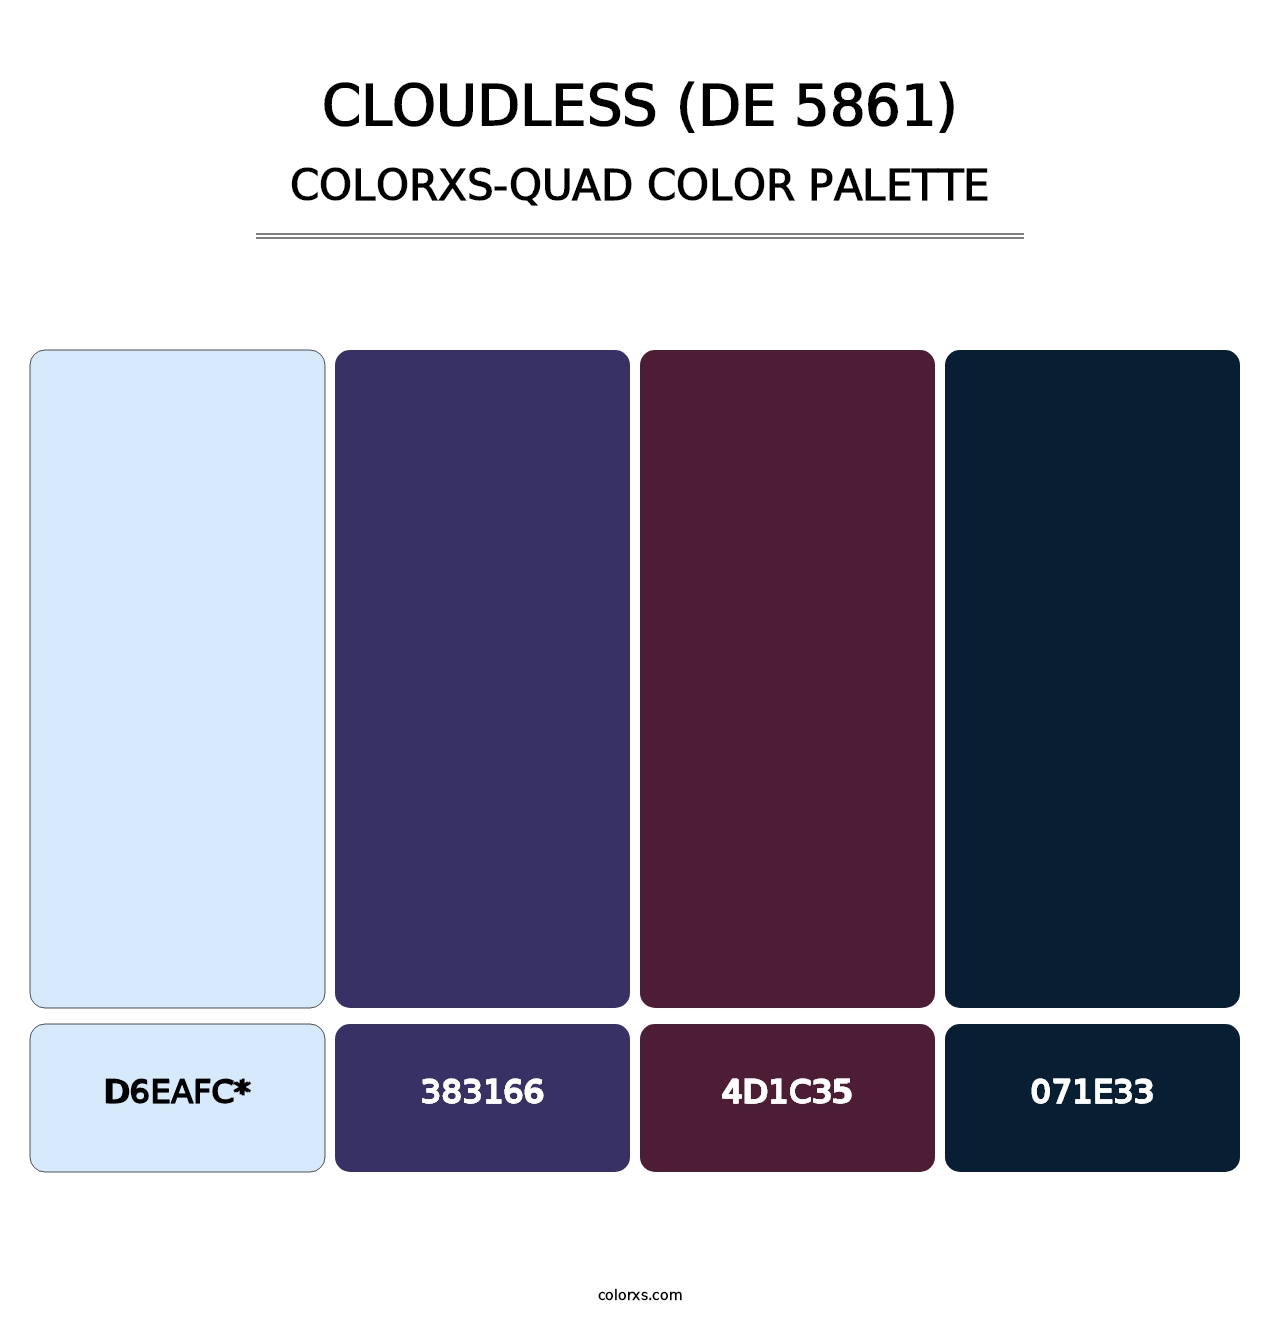 Cloudless (DE 5861) - Colorxs Quad Palette